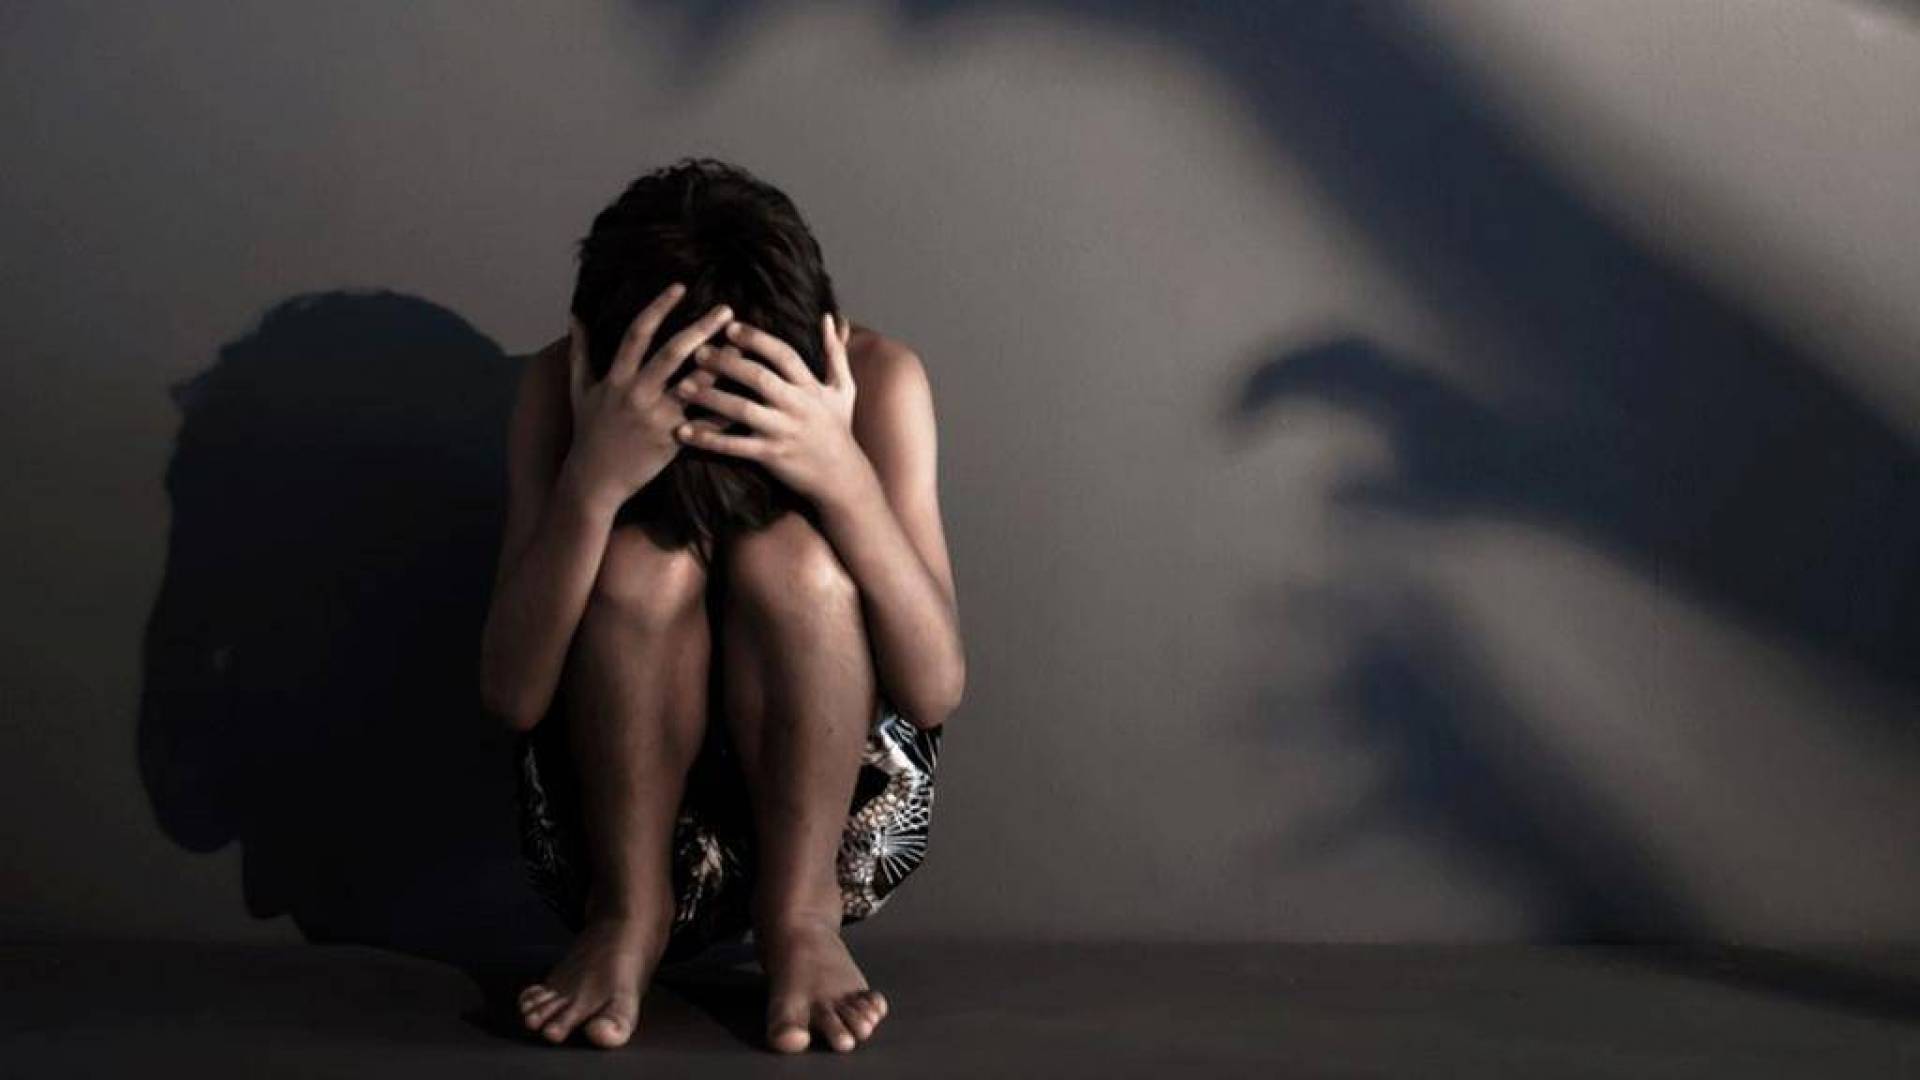 بوشيبة: حالات اغتصاب الأطفال تتراوح بين 20 إلى 30 ضحية شهريا